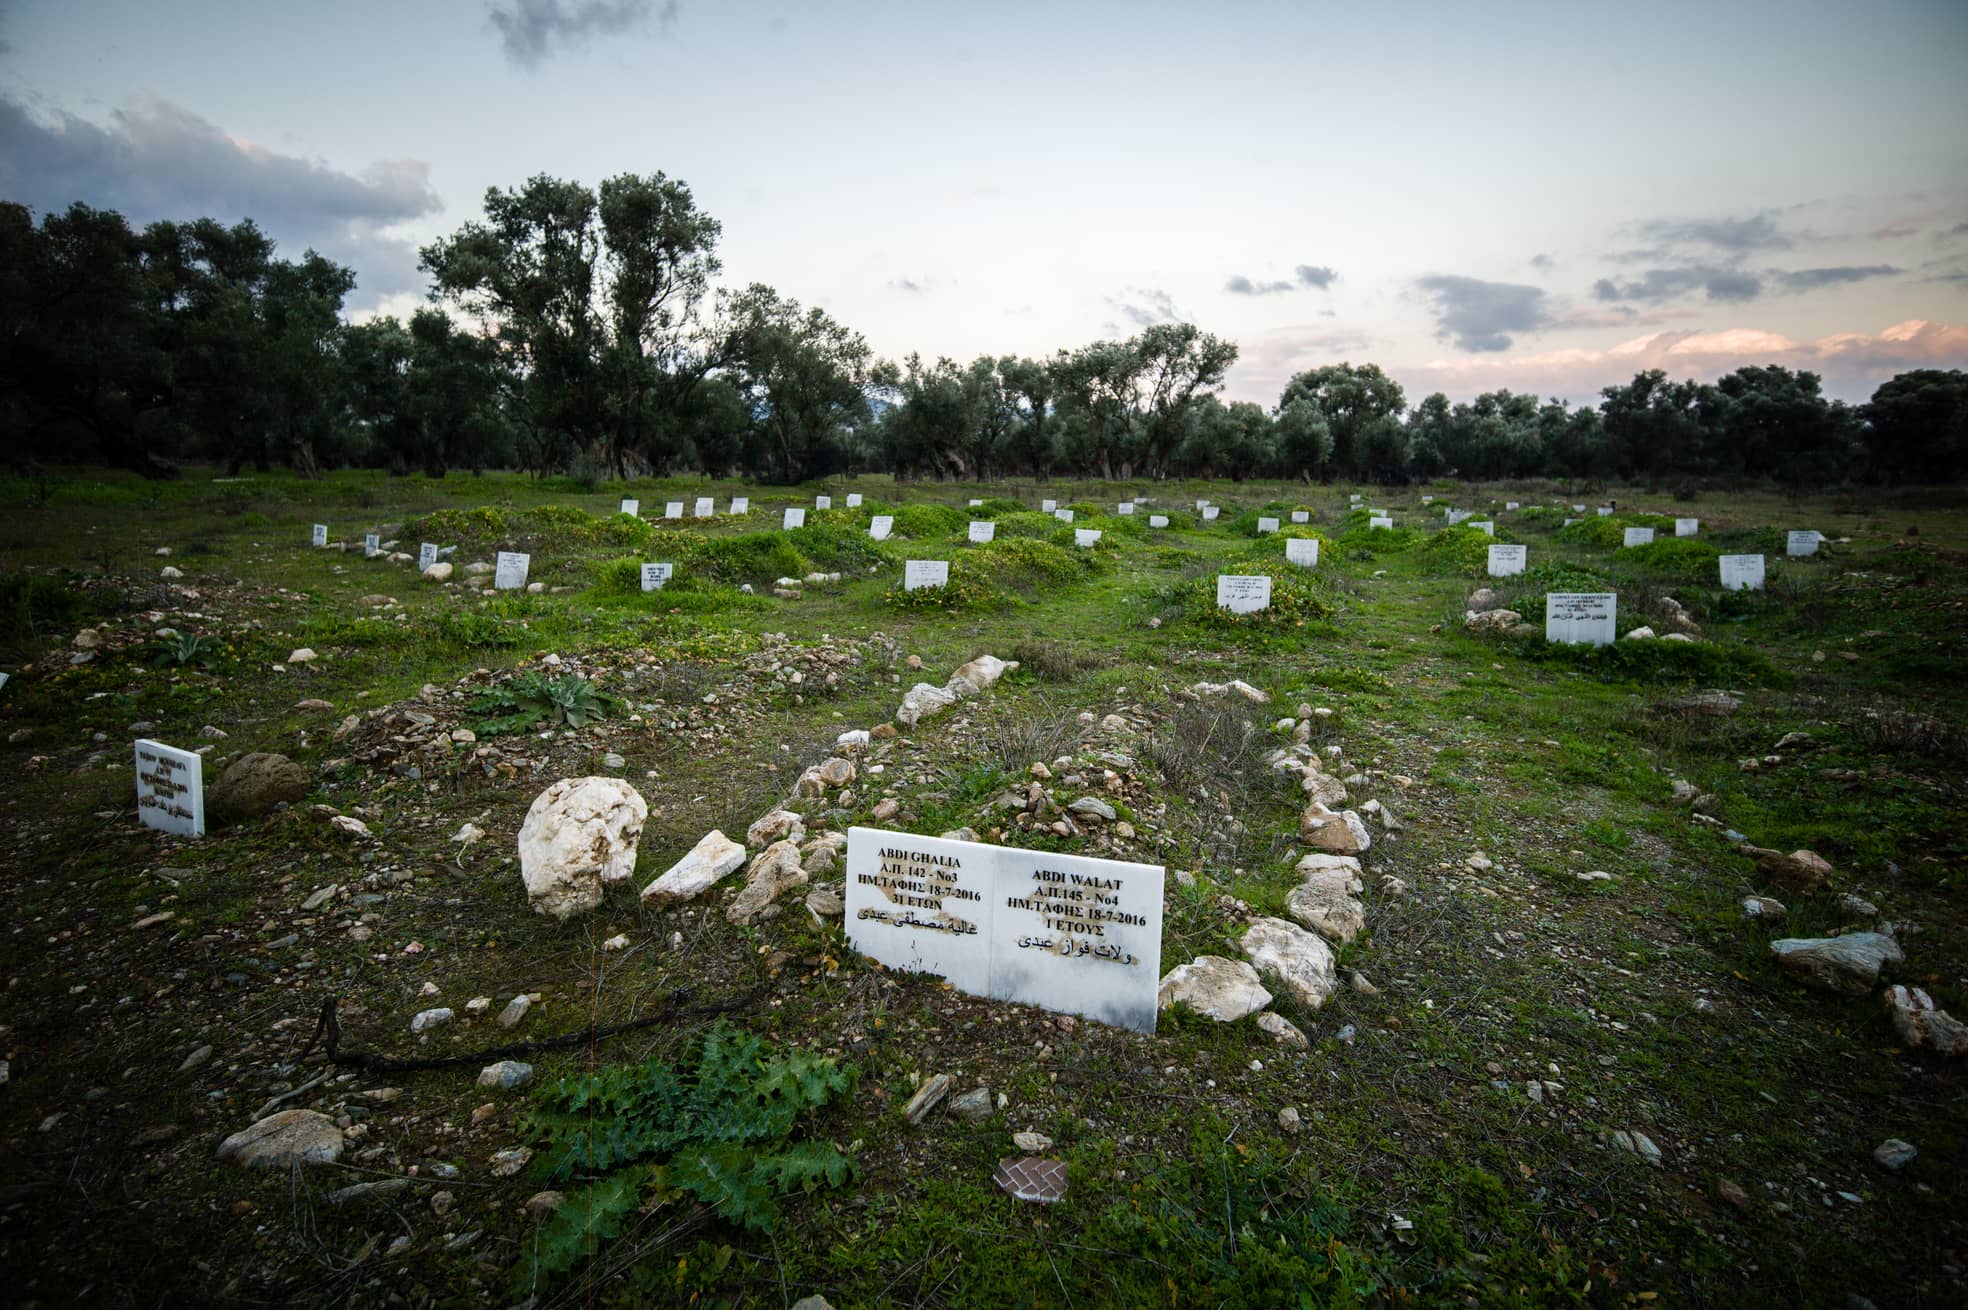 Der inoffizielle Friedhof für Flüchtlinge im Jahr 2018. Inzwischen sind die Gräber noch mehr zugewuchert und voller Müll, weil niemand ohne offizielle Genehmigung den „Olivenhain“ pflegen darf.